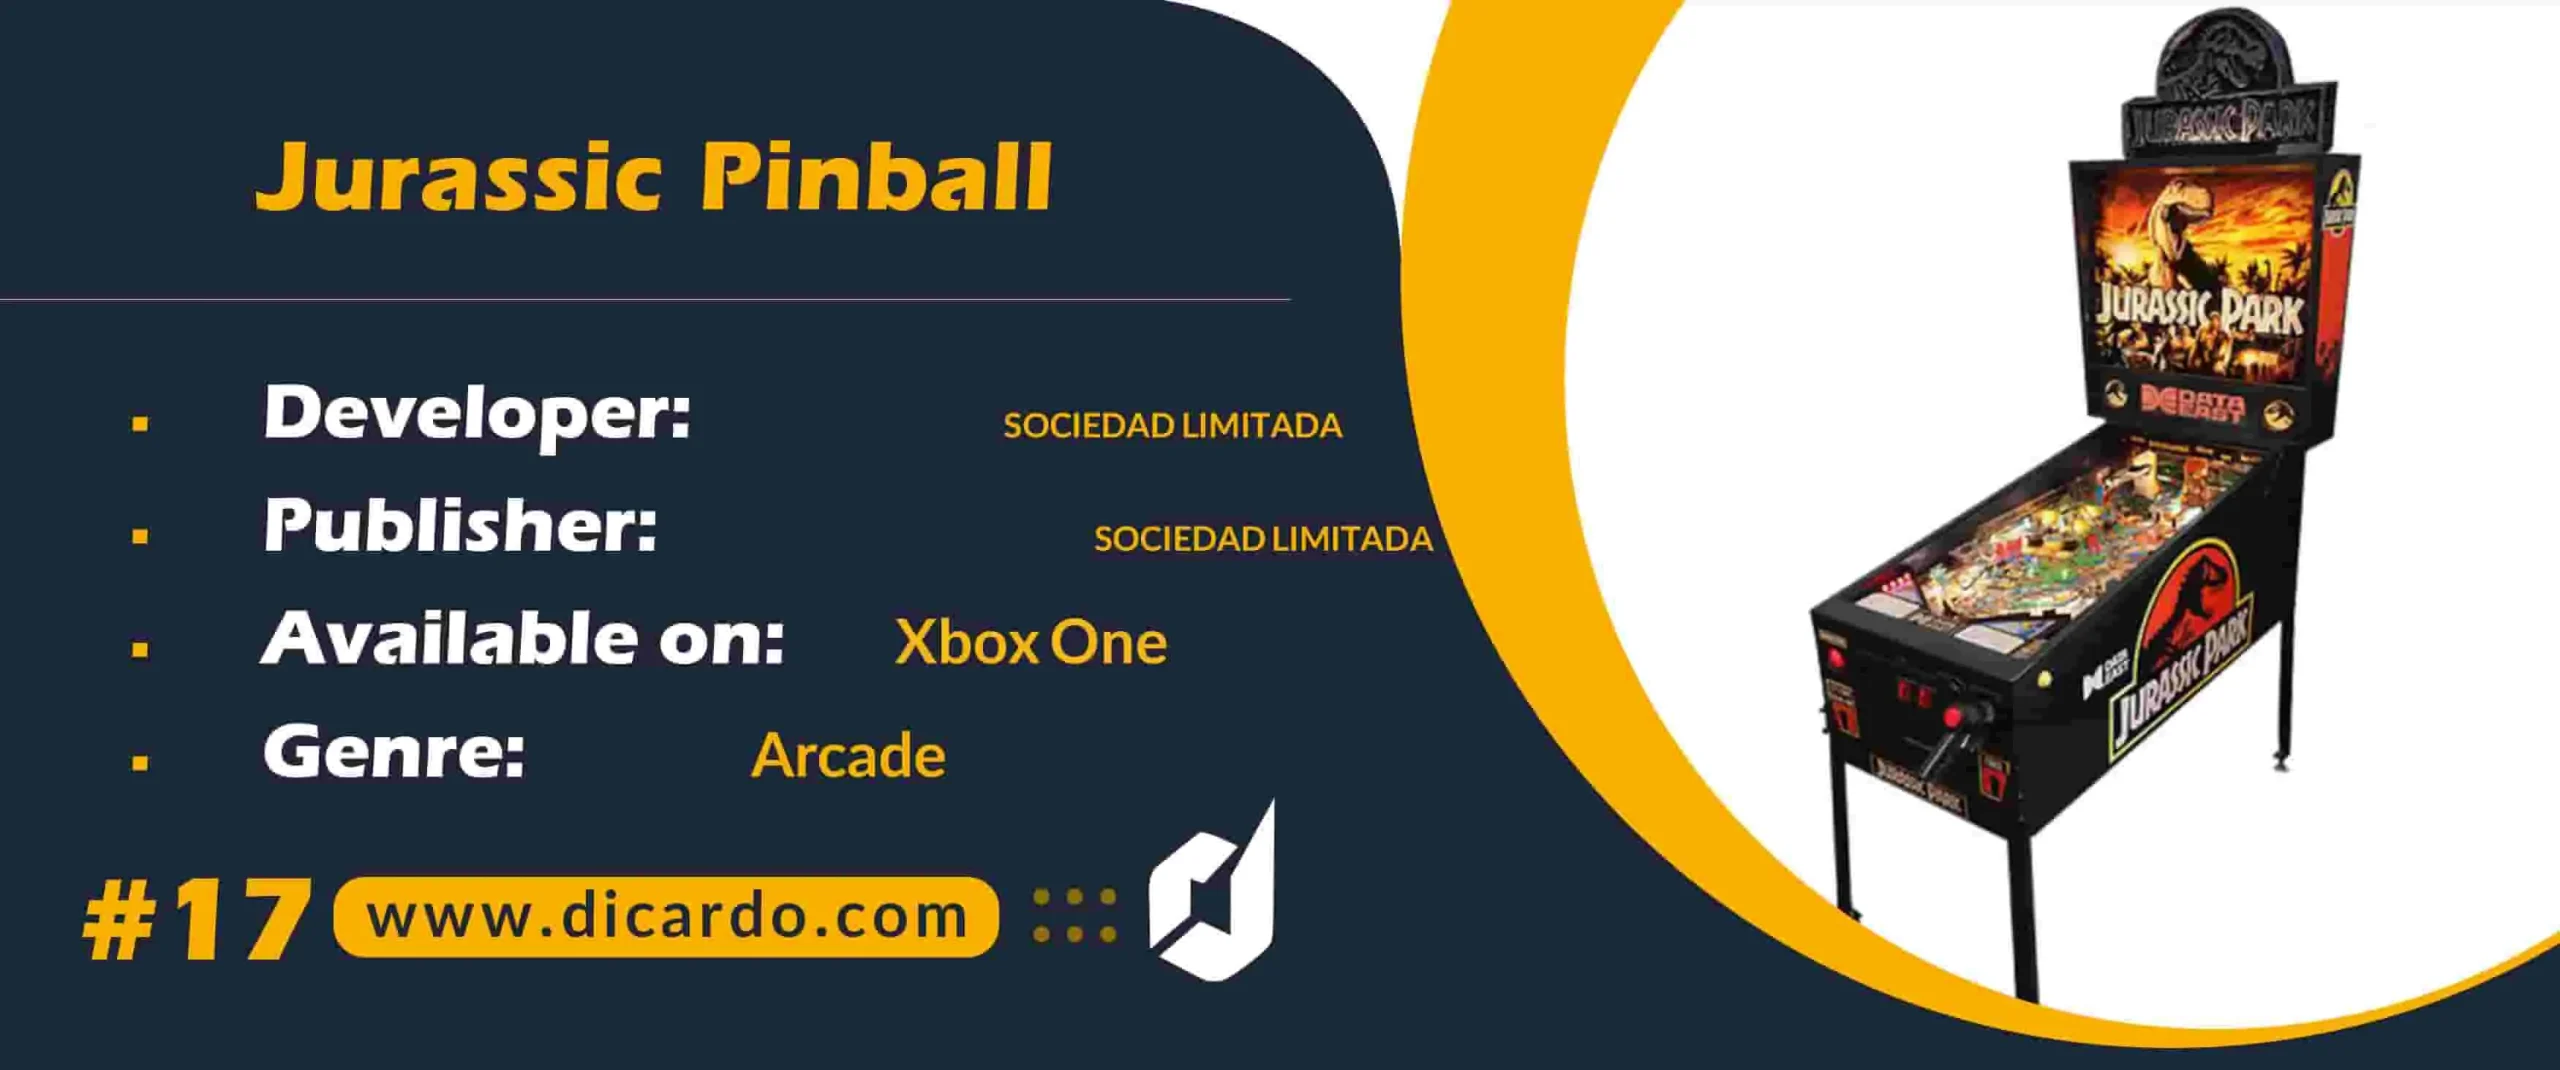 #17 جوراسیک پین بال Jurassic Pinball از بازیهای ایکس باکس 1 پین بال